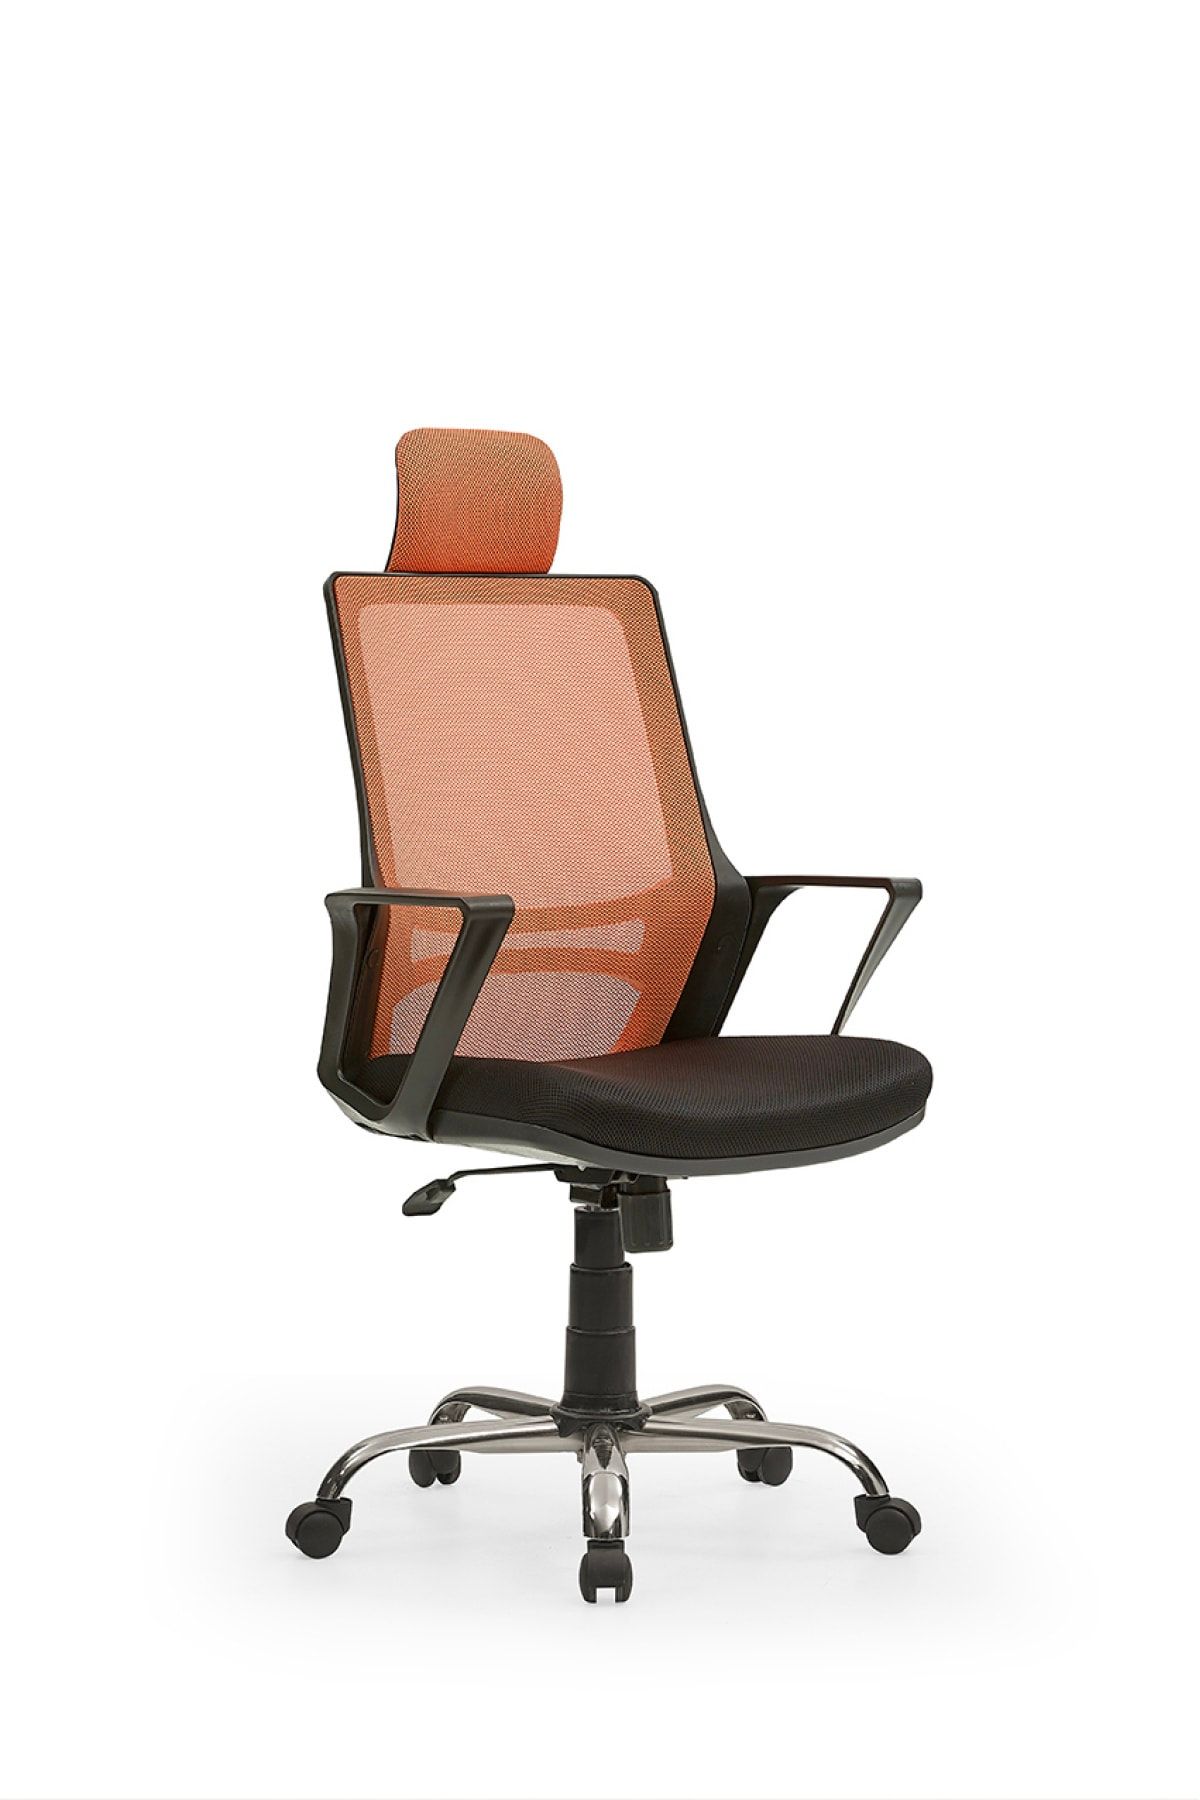 MEHMET YAREN BURO Arya2 Bilgisayar Koltuğu - Ofis - Müdür - Büro - Çalışma Sandalyesi Turuncu Siyah Renk Krom Ayaklı